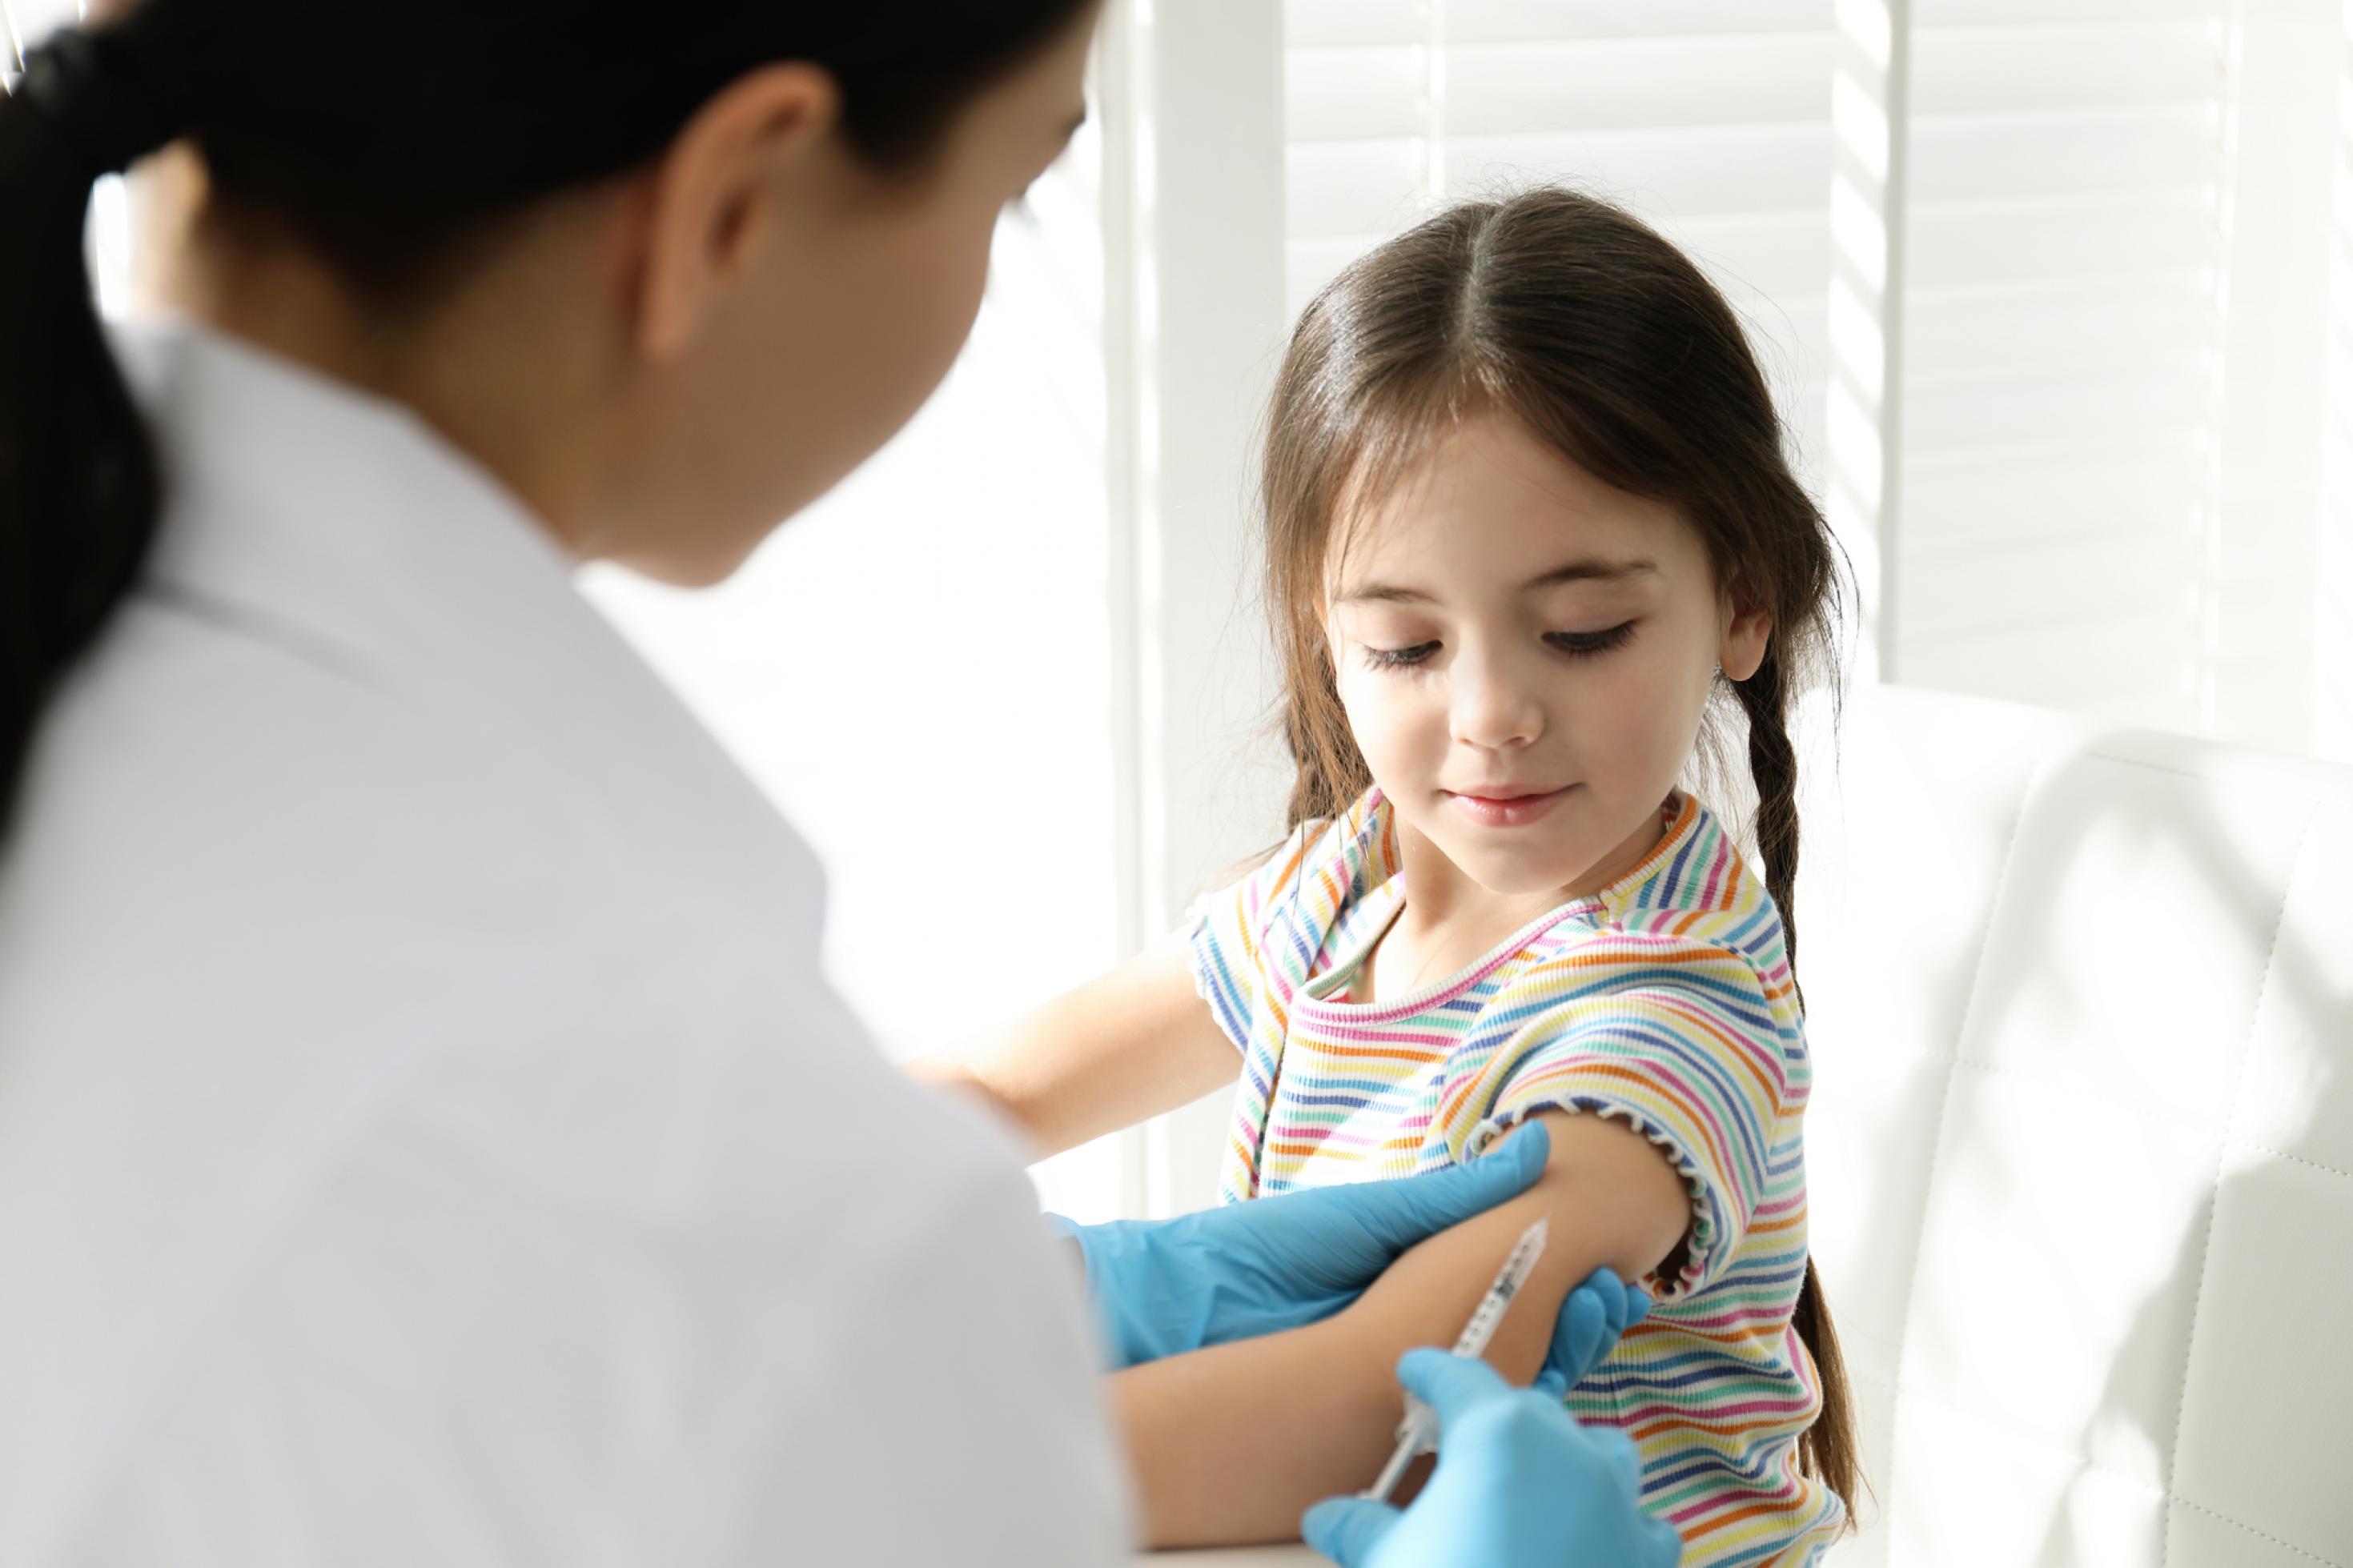 Ein kleines Mädchen erhält eine Impfung in den Oberarm.